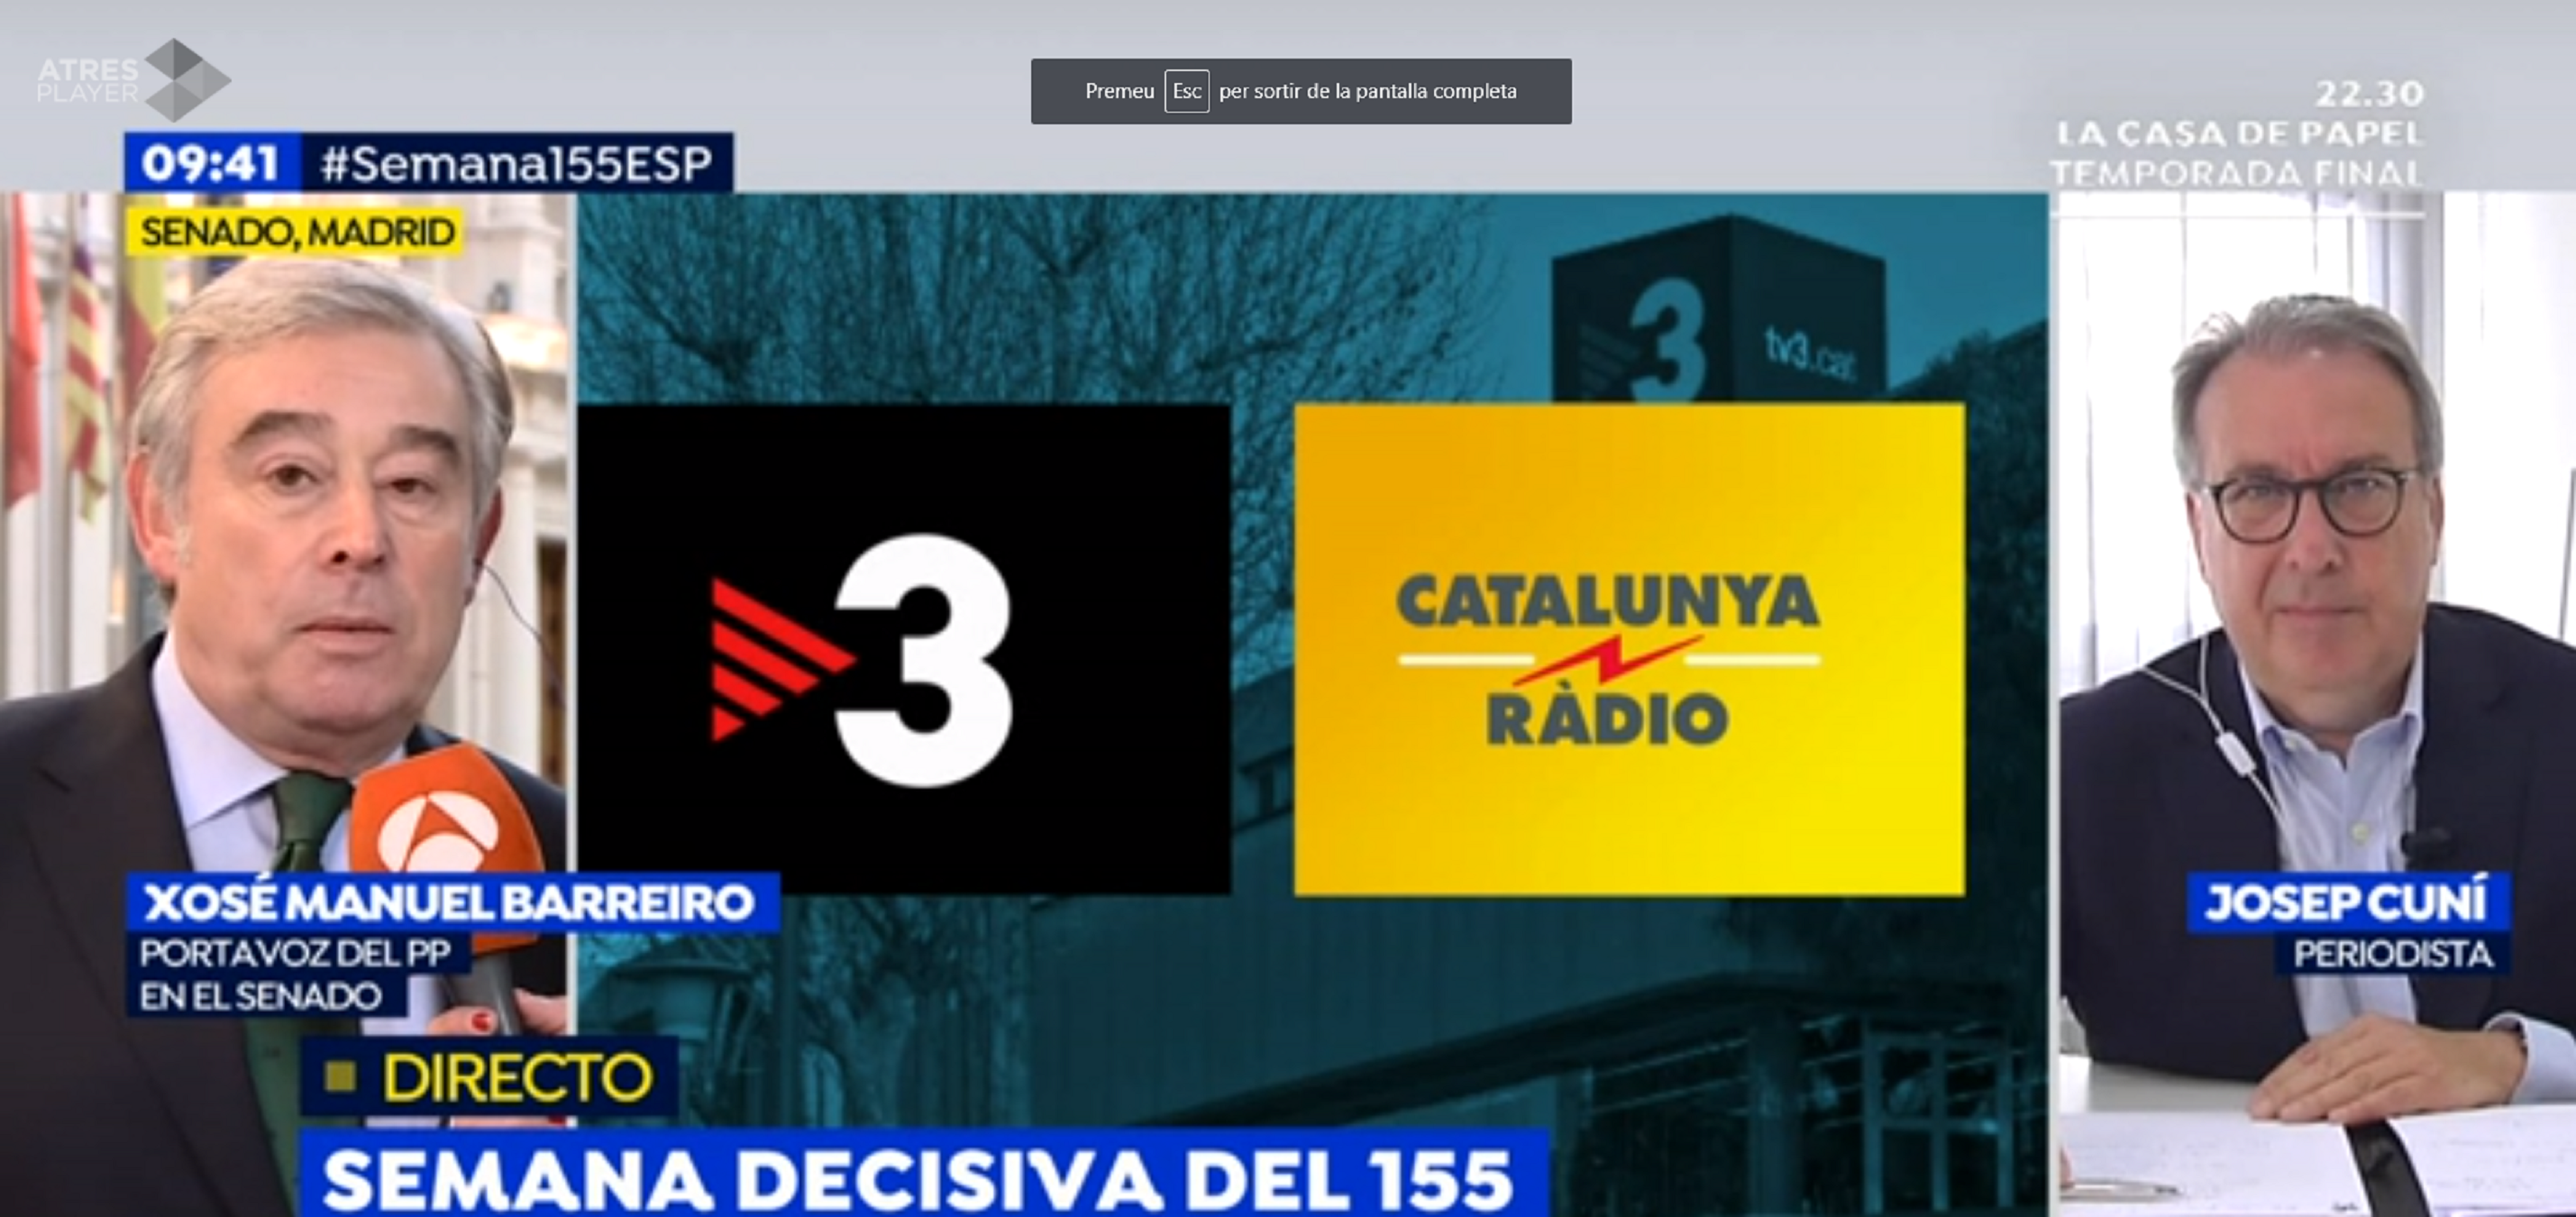 Merlí adoctrina el 16,4% y lidera una TV3 pre-intervenida